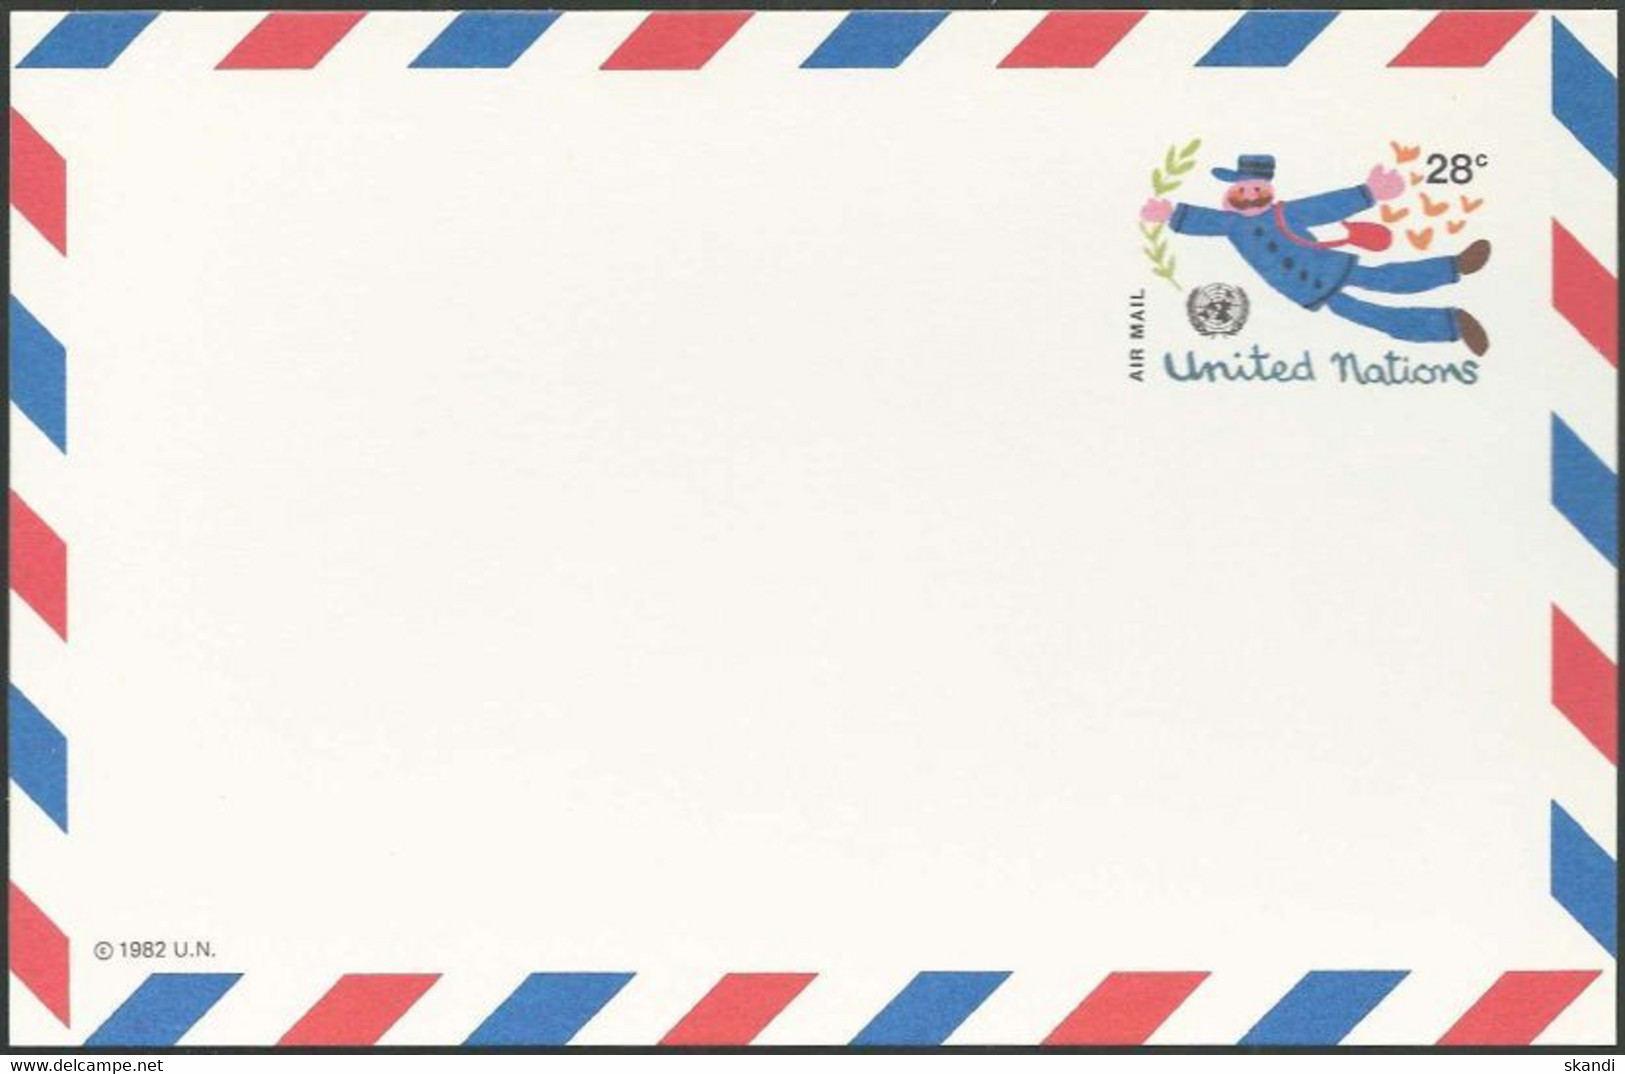 UNO NEW YORK 1982 Mi-Nr. LP 12 Ganzsache Luftpostkarte Ungebraucht - Luftpost